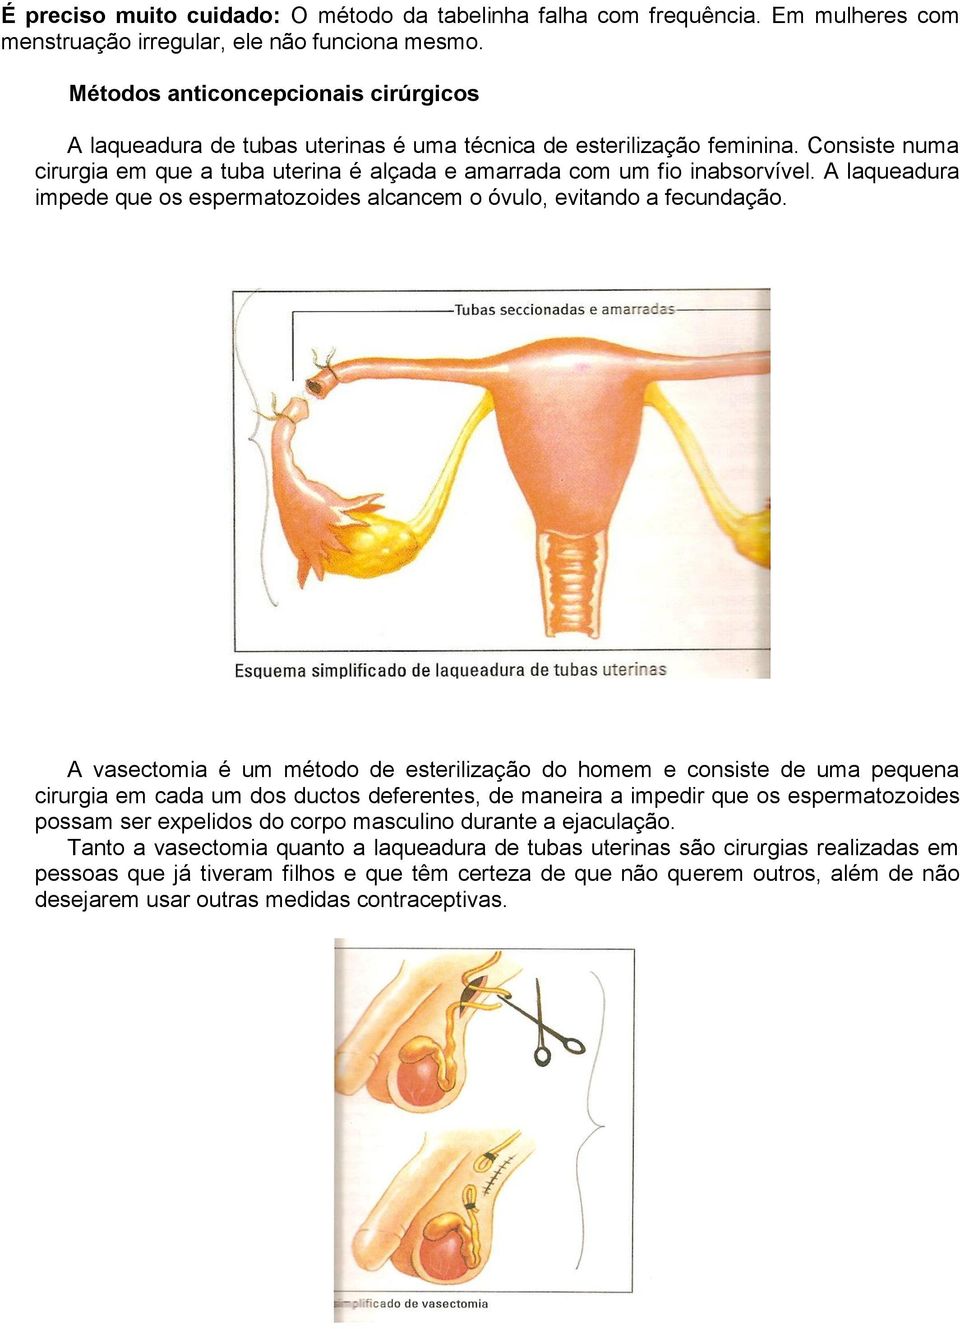 A laqueadura impede que os espermatozoides alcancem o óvulo, evitando a fecundação.